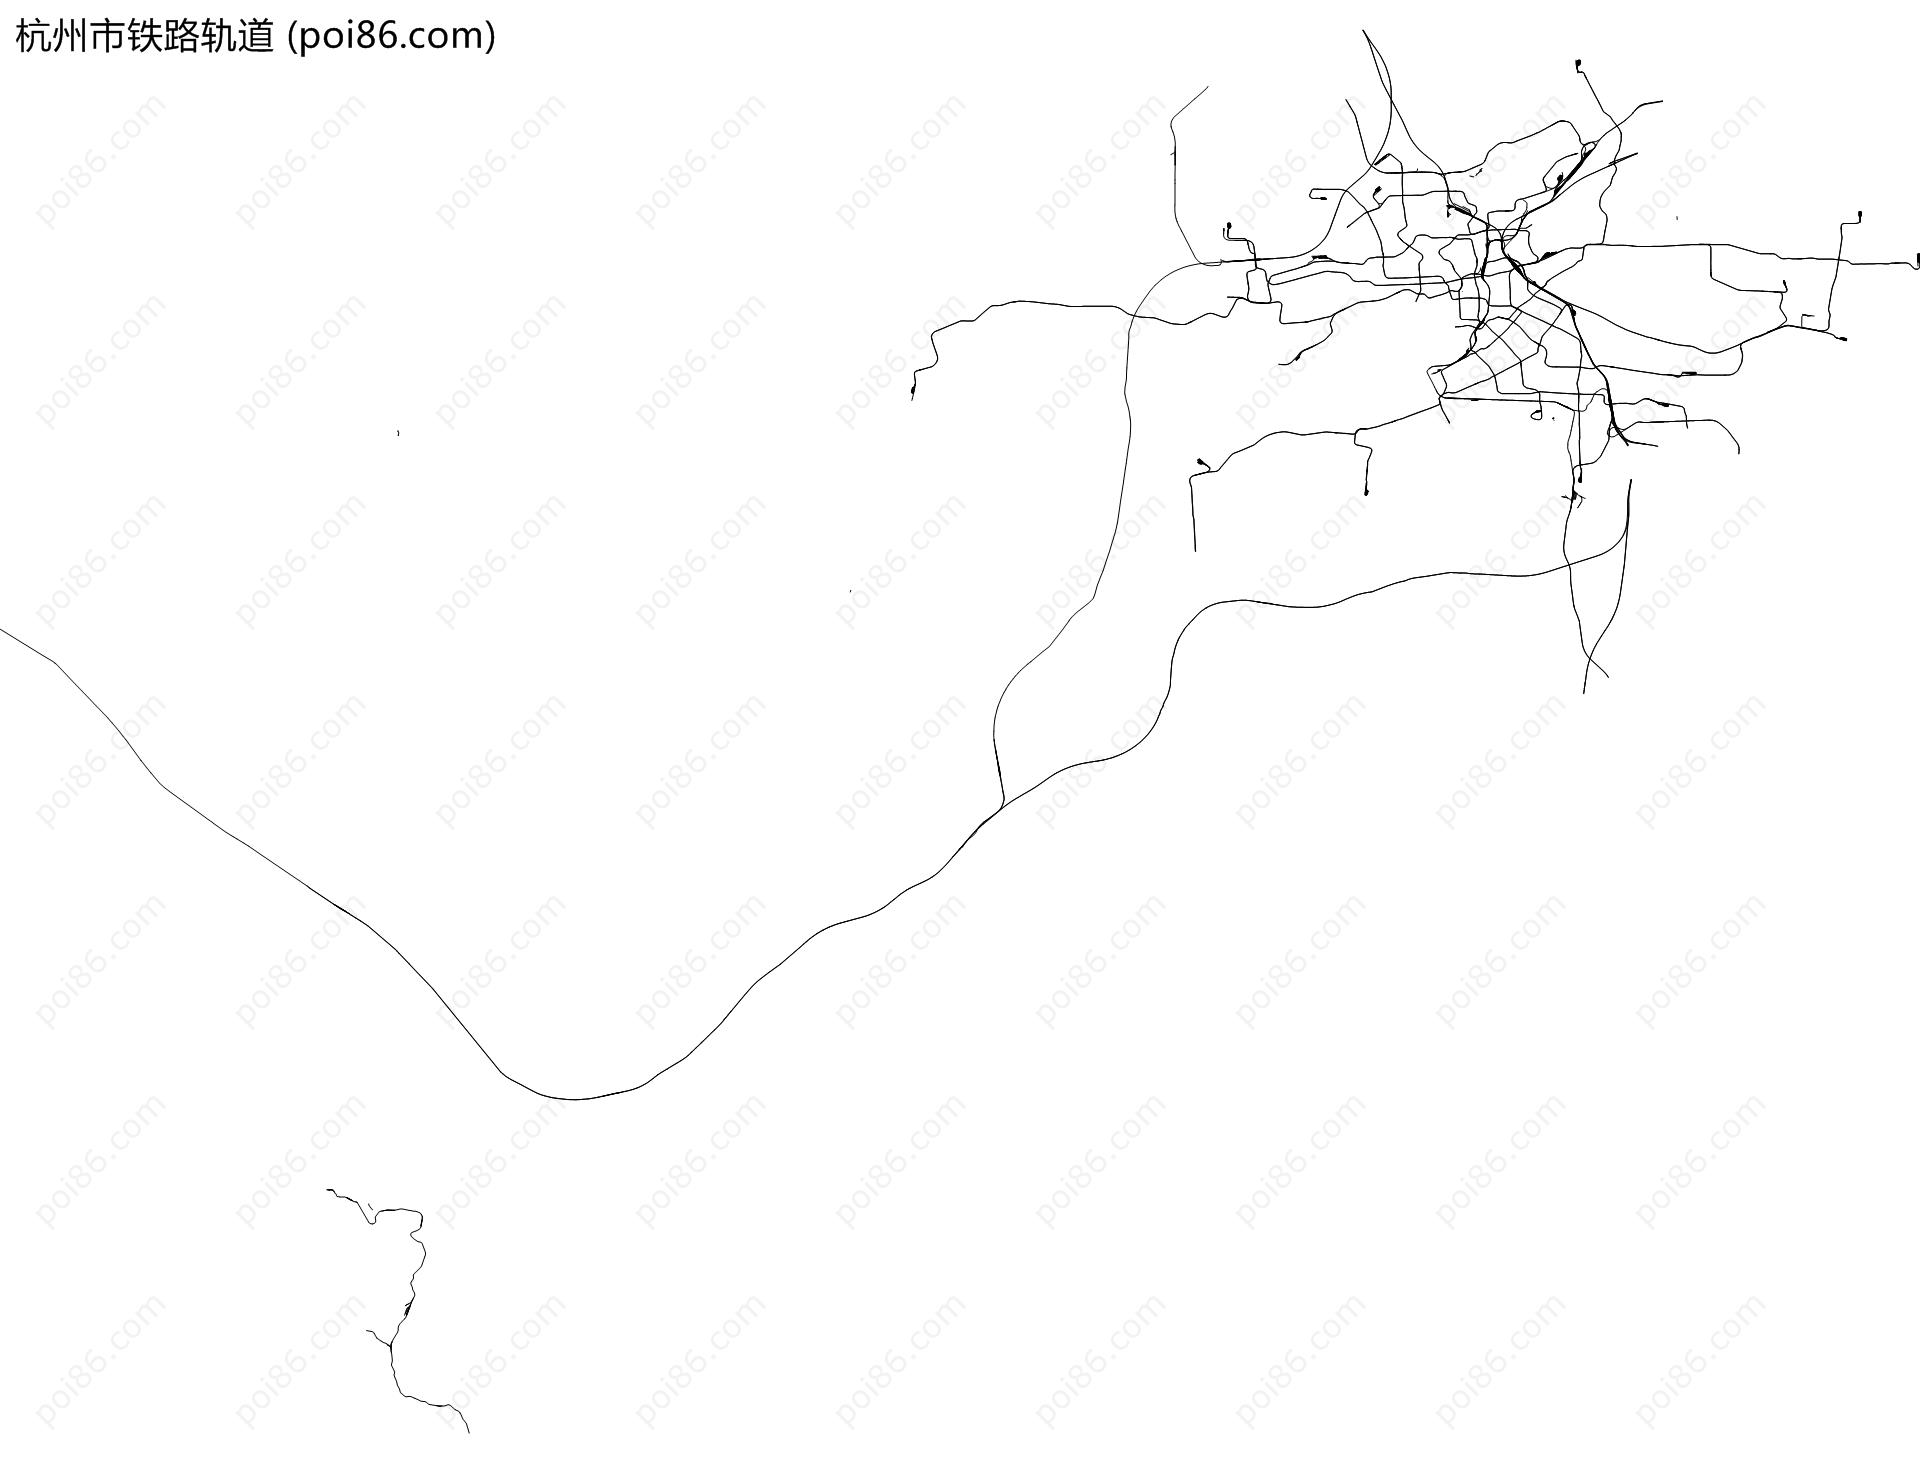 杭州市铁路轨道地图